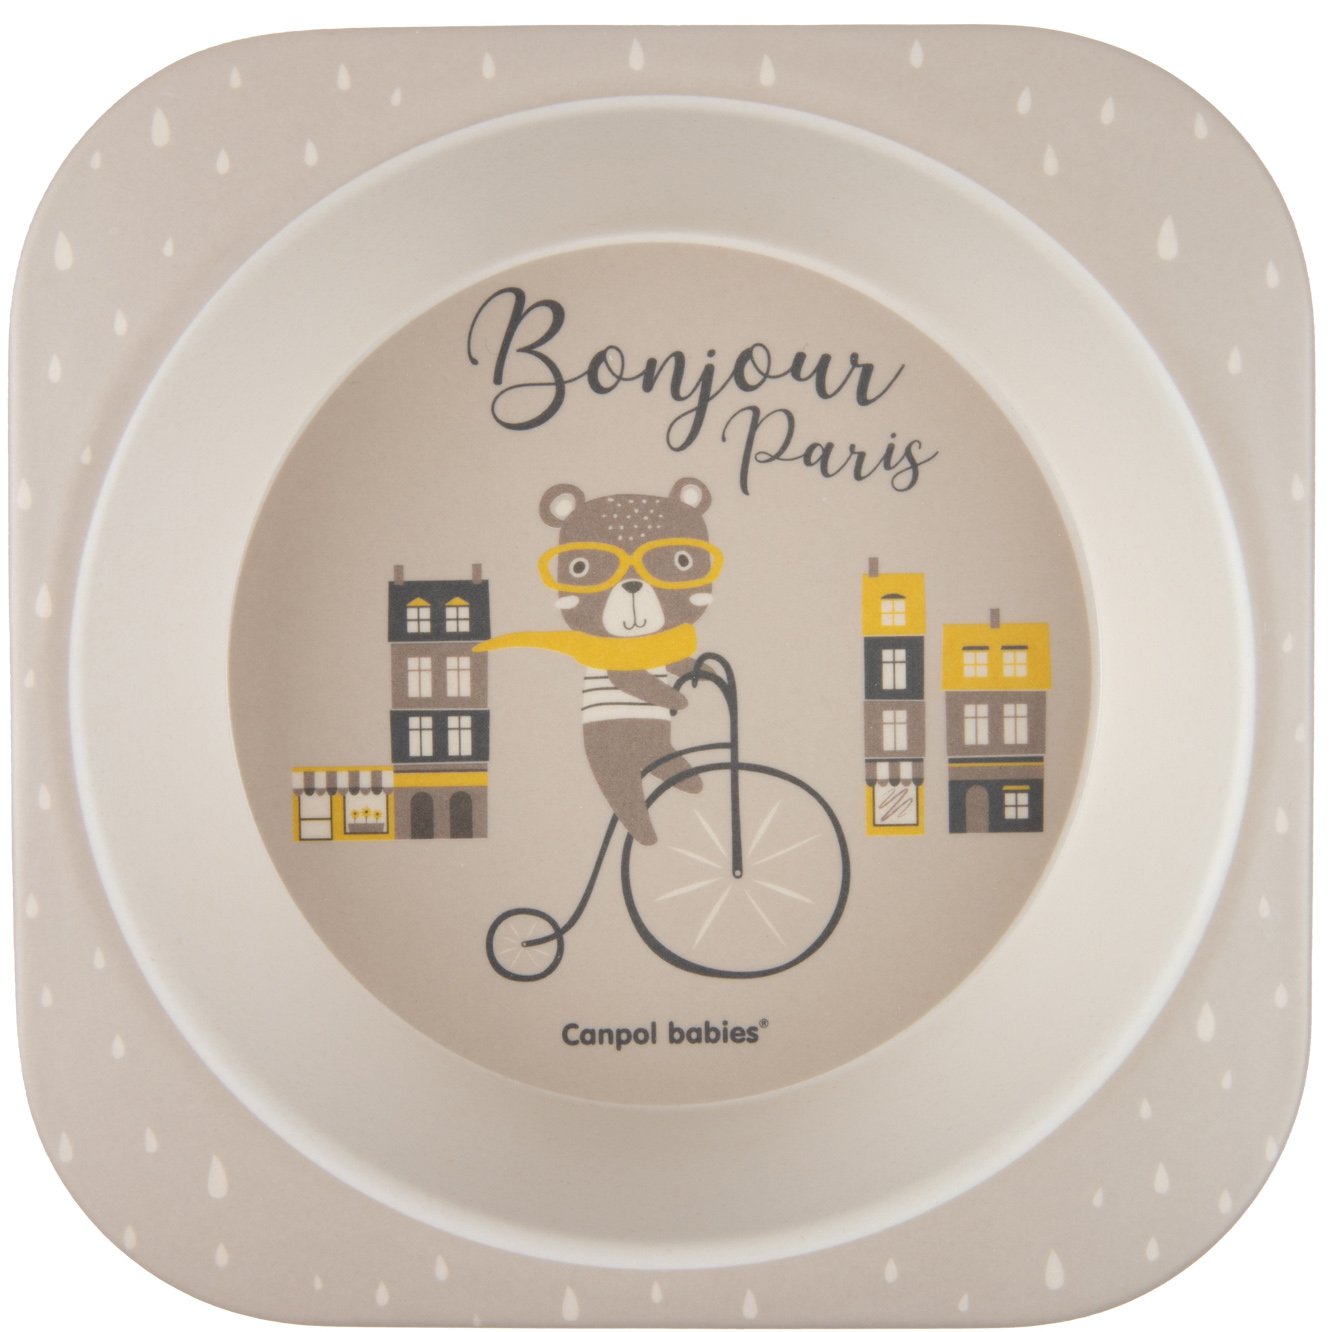 Набор посуды Canpol babies Bonjour Paris, 5 предметов, бежевый (9/227_bei) - фото 2